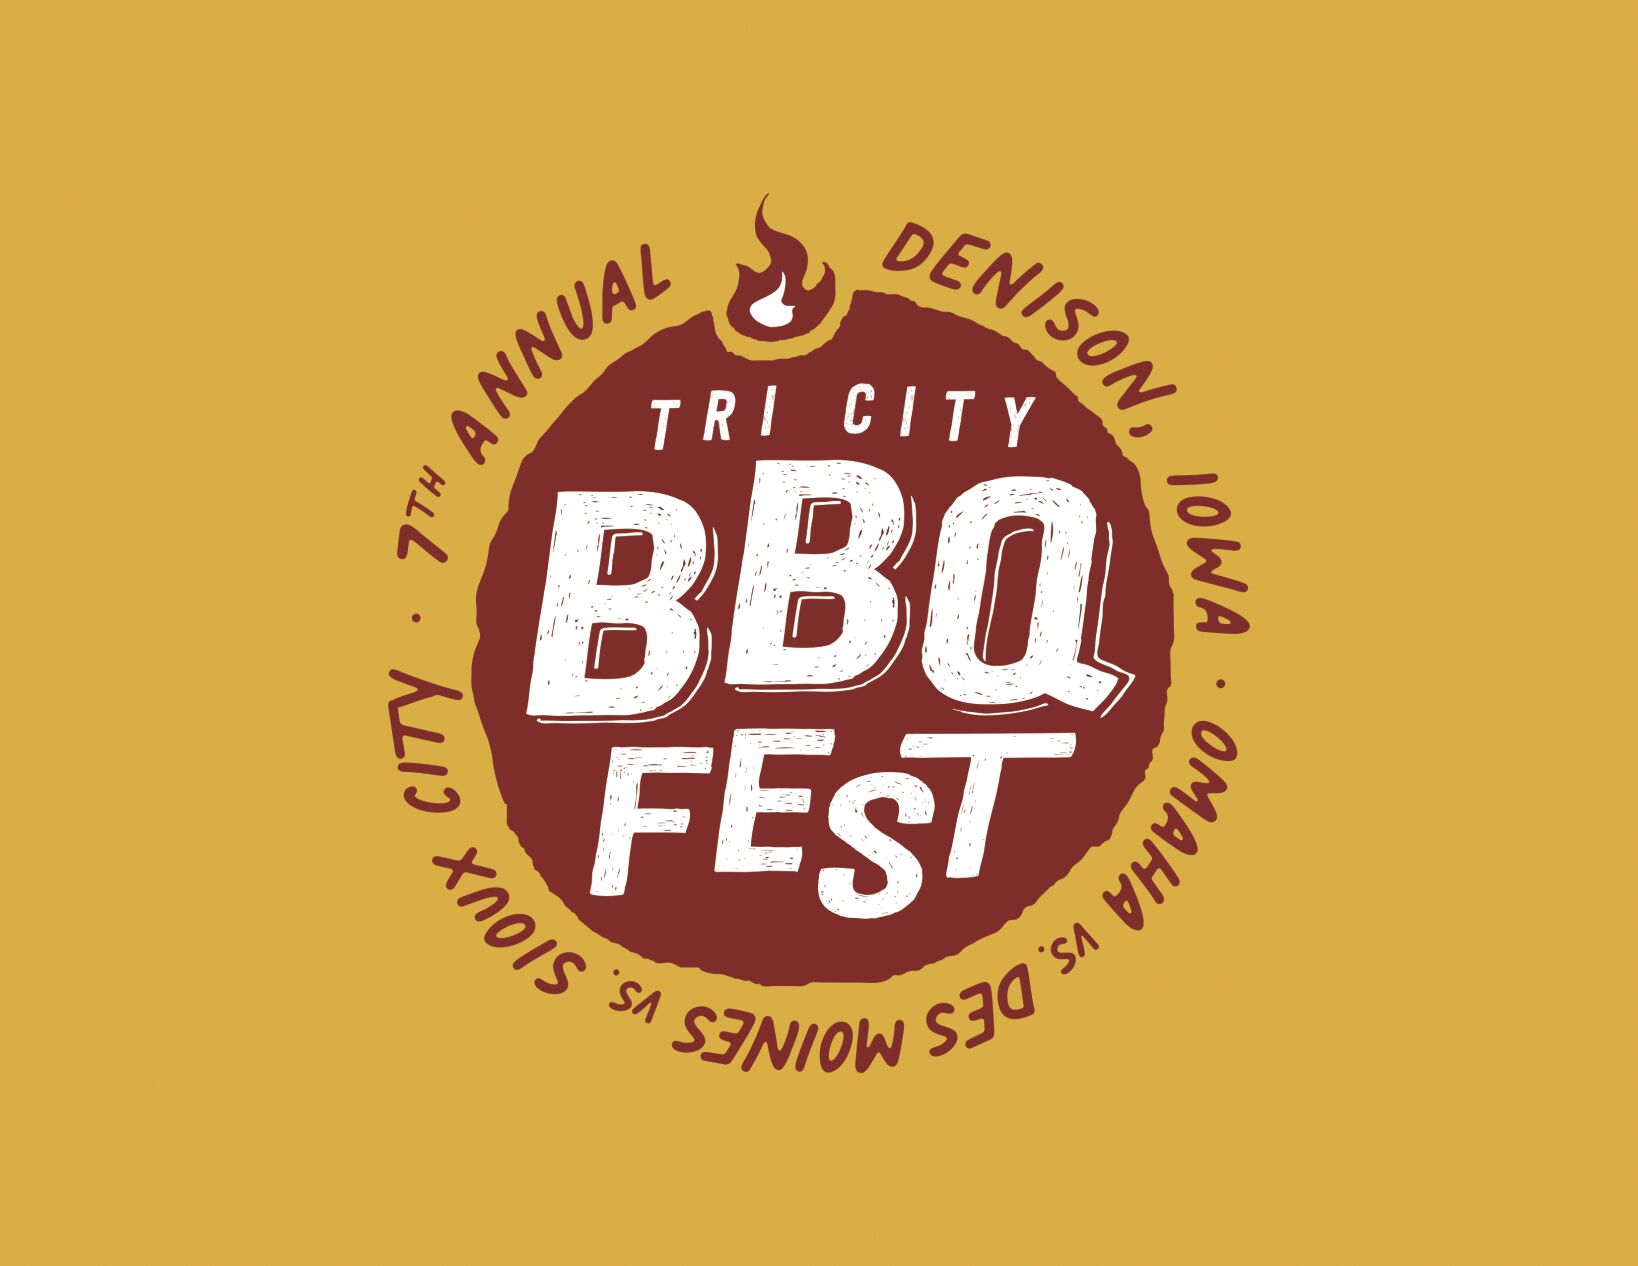 Tri City BBQ Fest starts Friday